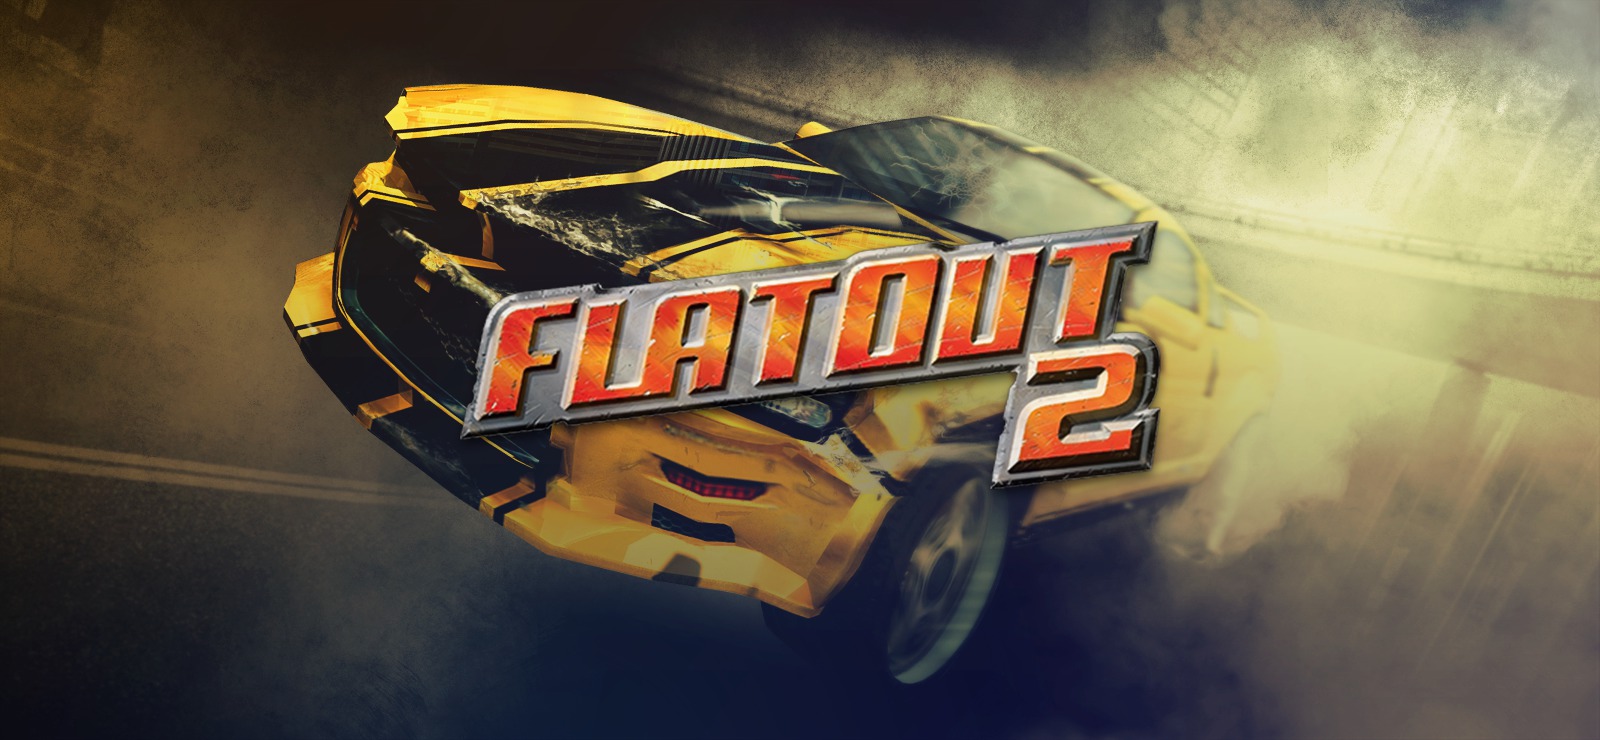 flatout 2 download torrent